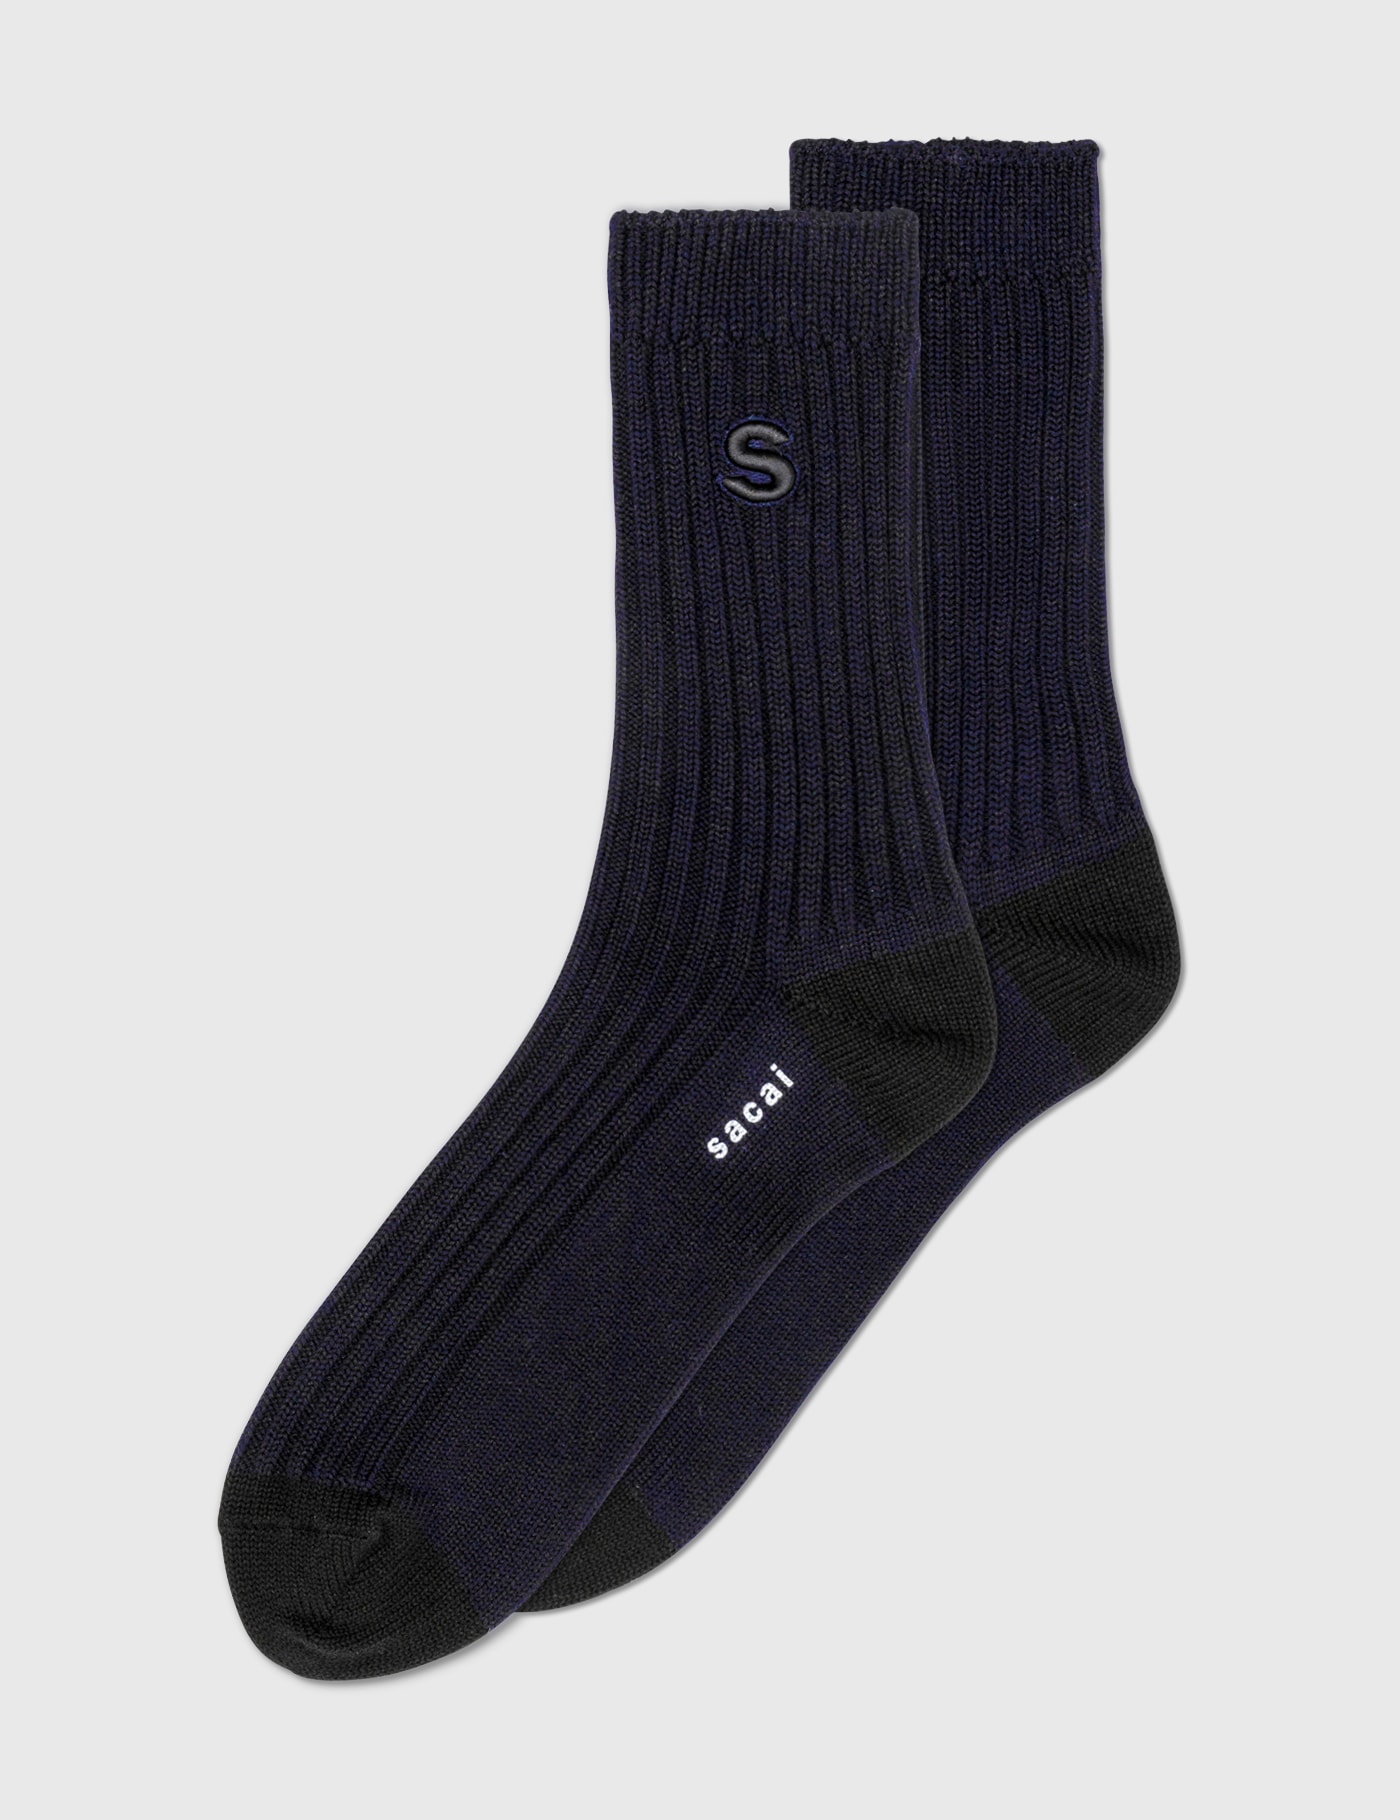 Sacai - S Logo Socks | HBX